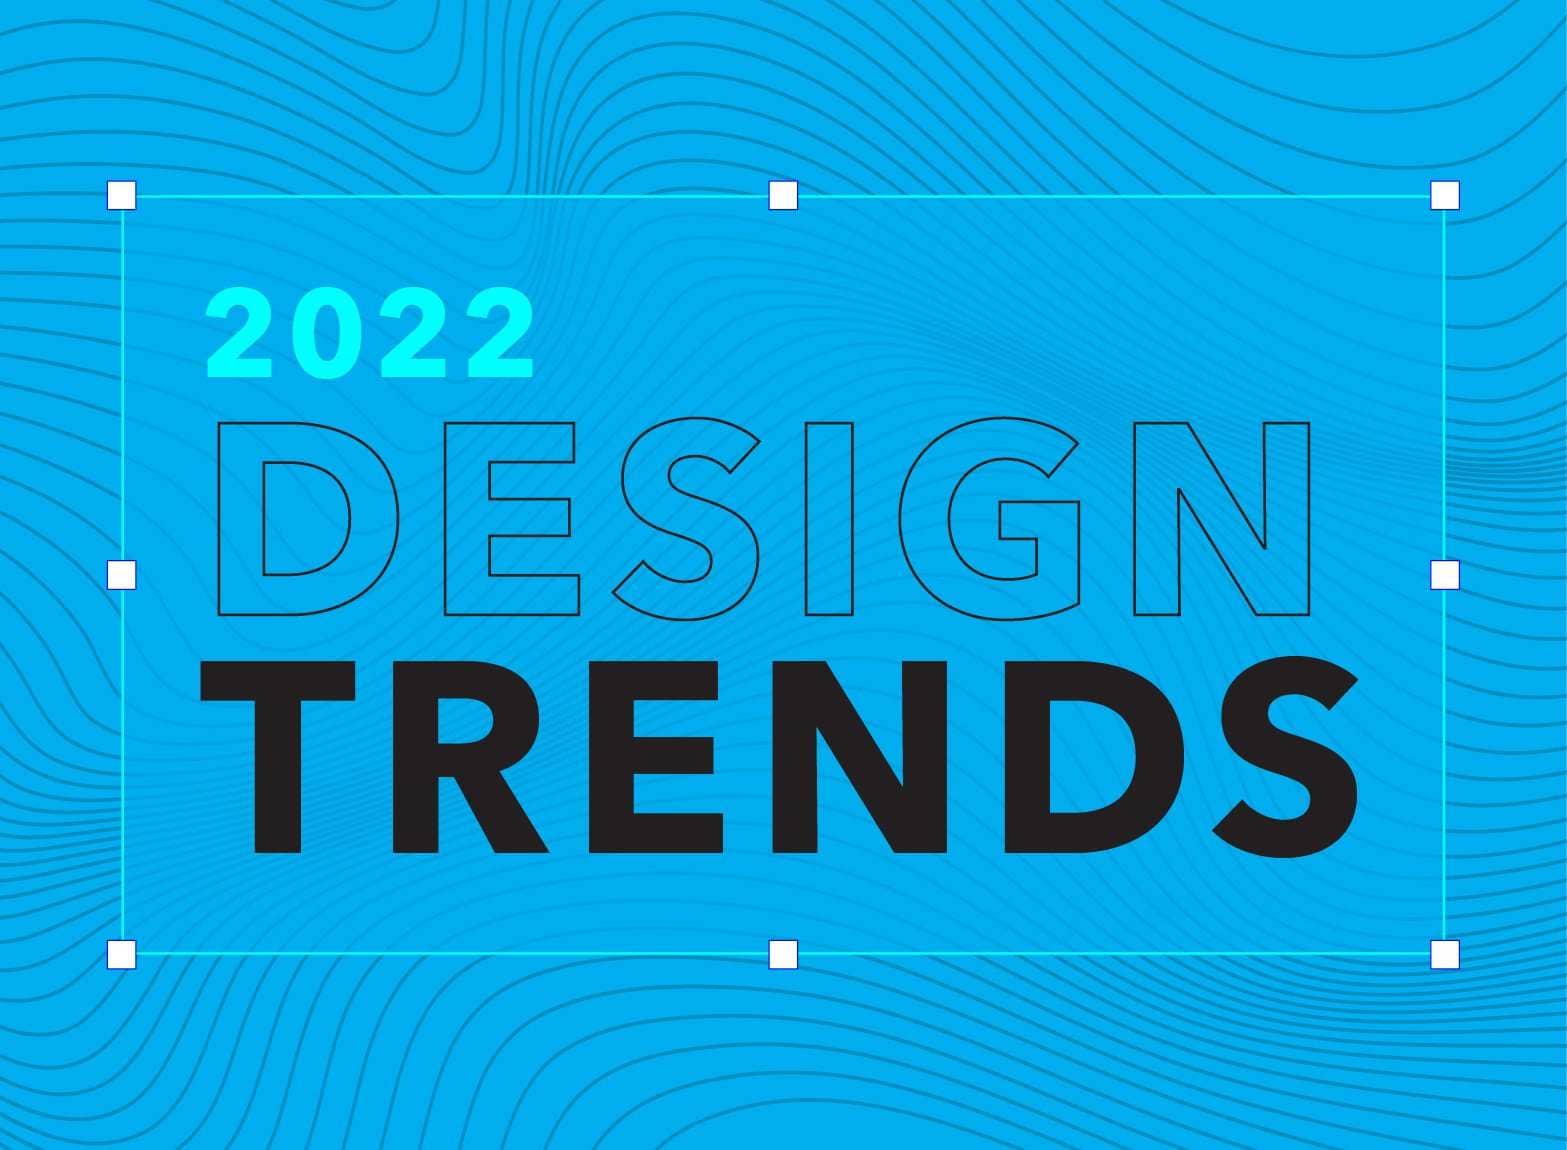 2022 Design trends